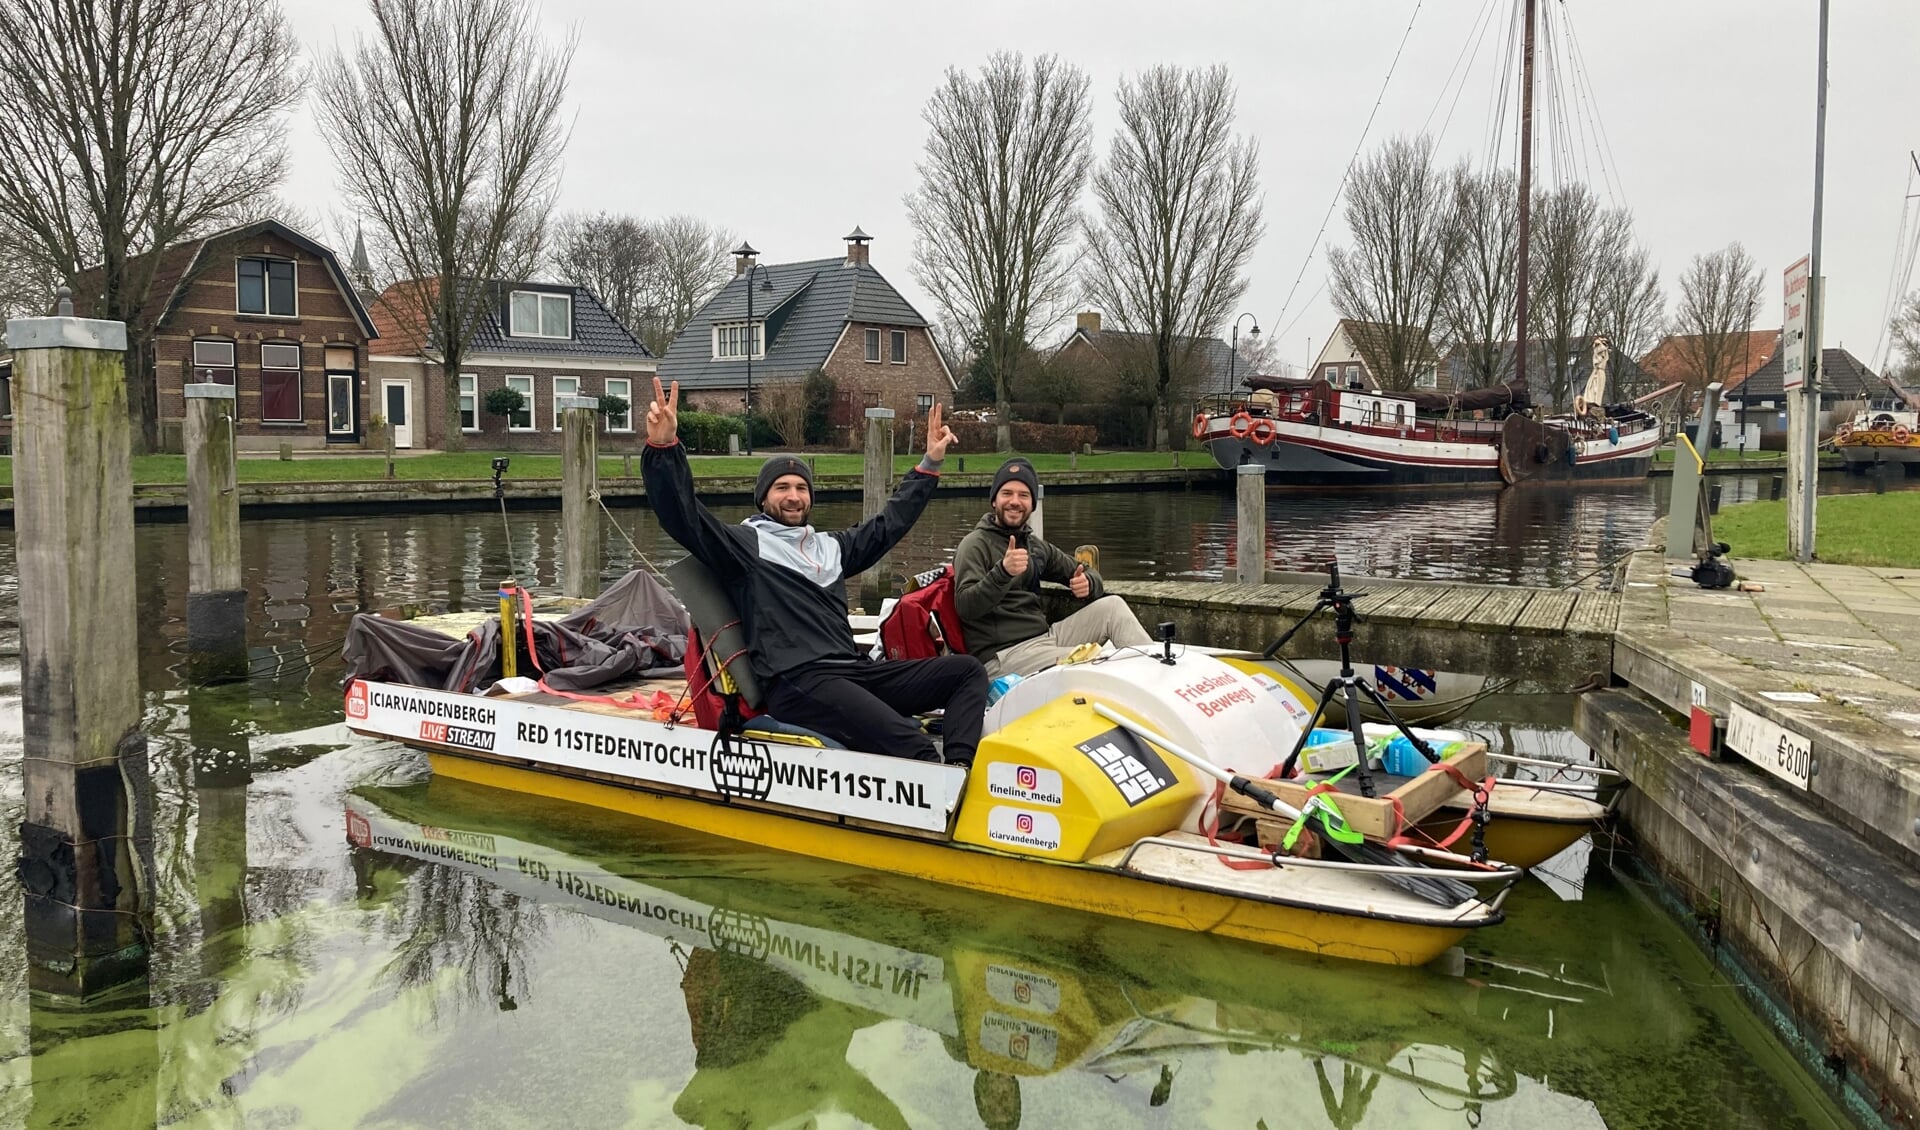 Iciar van den Bergh en Tobias Pieffers onderweg op de waterfiets.